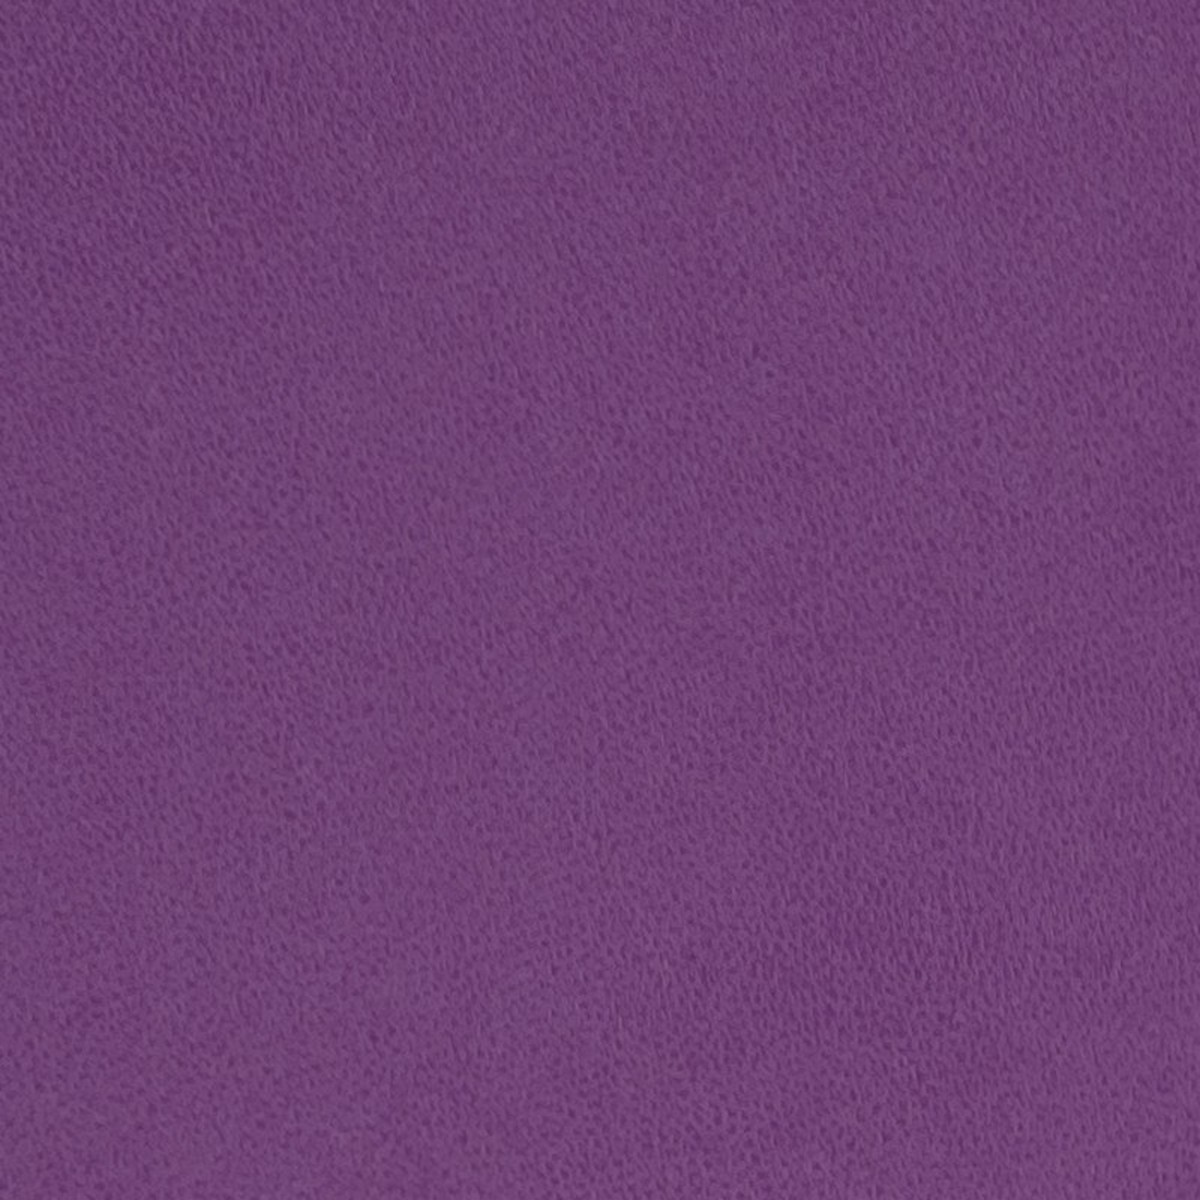 Cordoba Violet Fabric by Clarke & Clarke